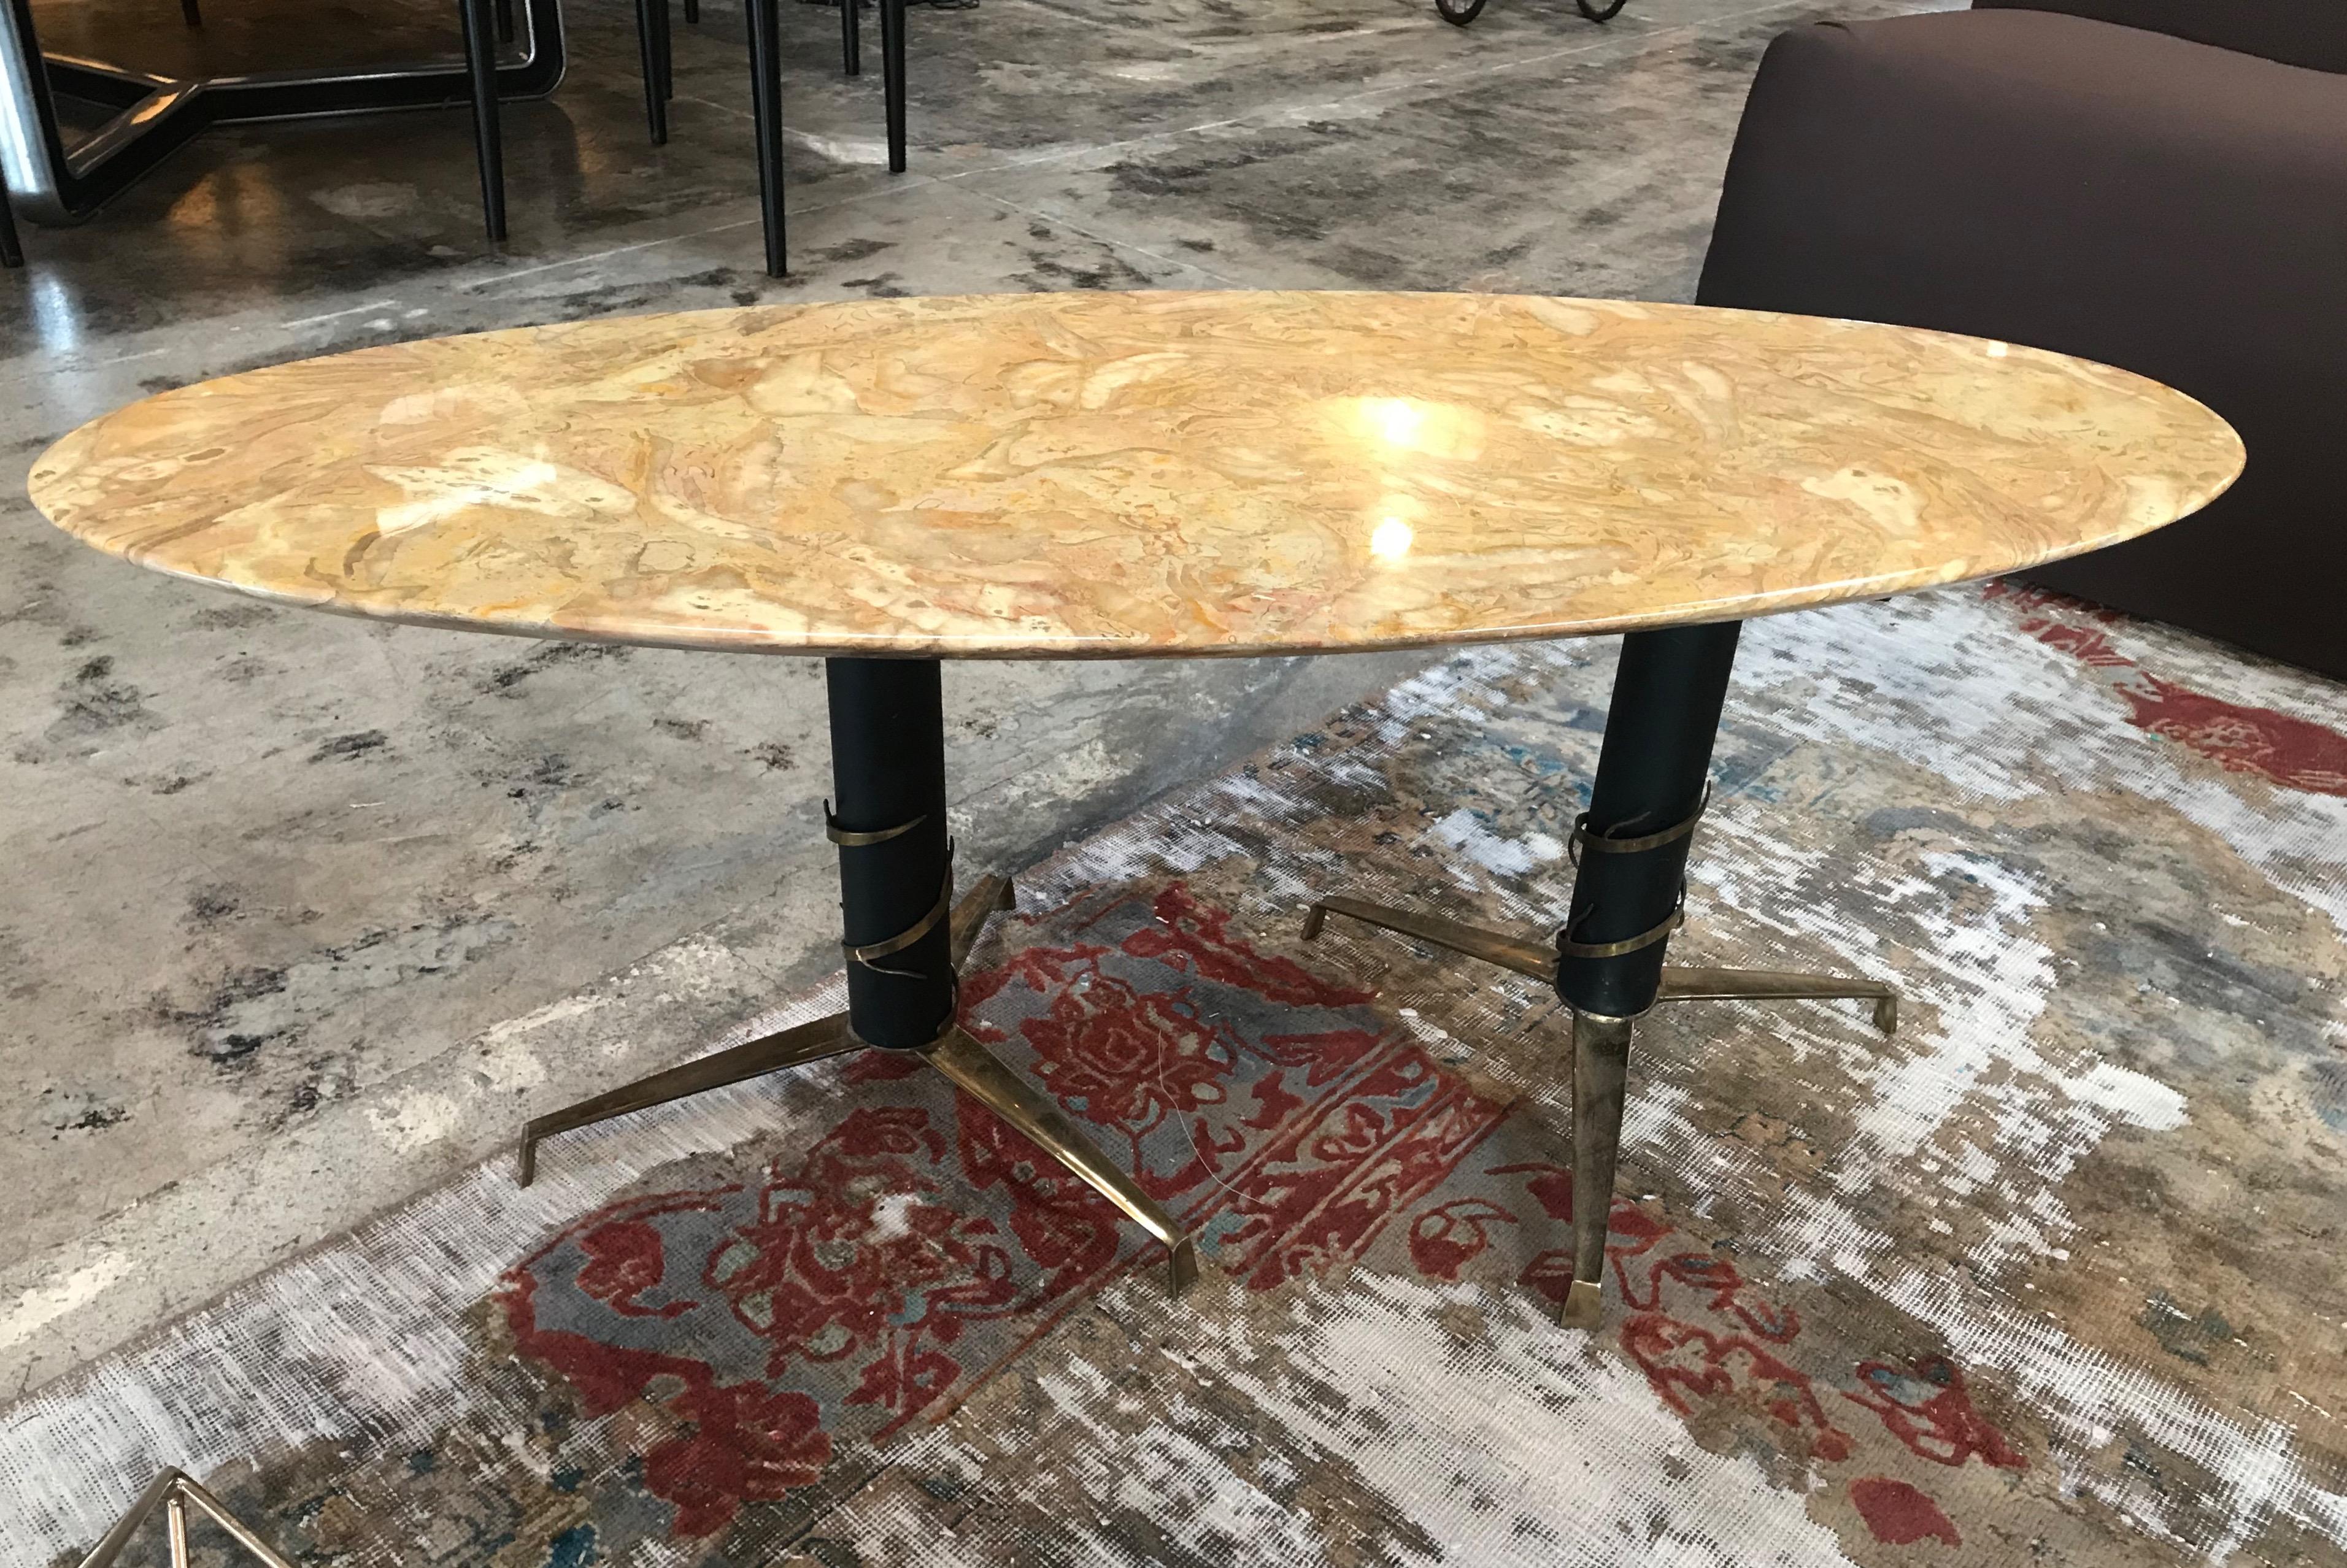 Table basse ovale en marbre jaune et laiton de style italien moderne du milieu du siècle, 1950
Le laiton en patine d'origine crée un look vintage vibrant. Le marbre est en parfait état.